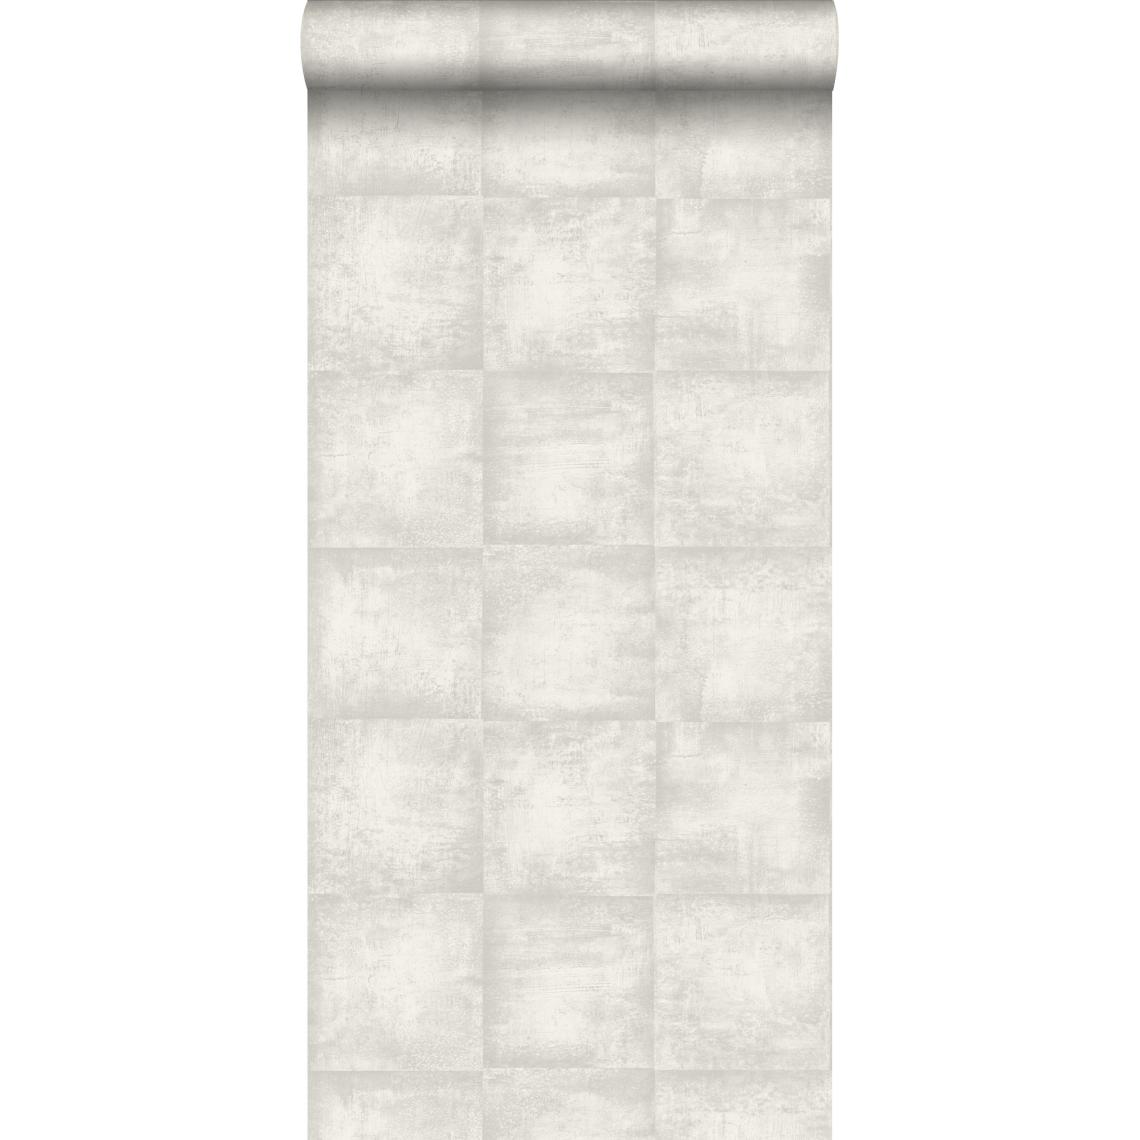 ESTAhome - ESTAhome papier peint effet béton gris clair - 138202 - 53 cm x 10,05 m - Papier peint